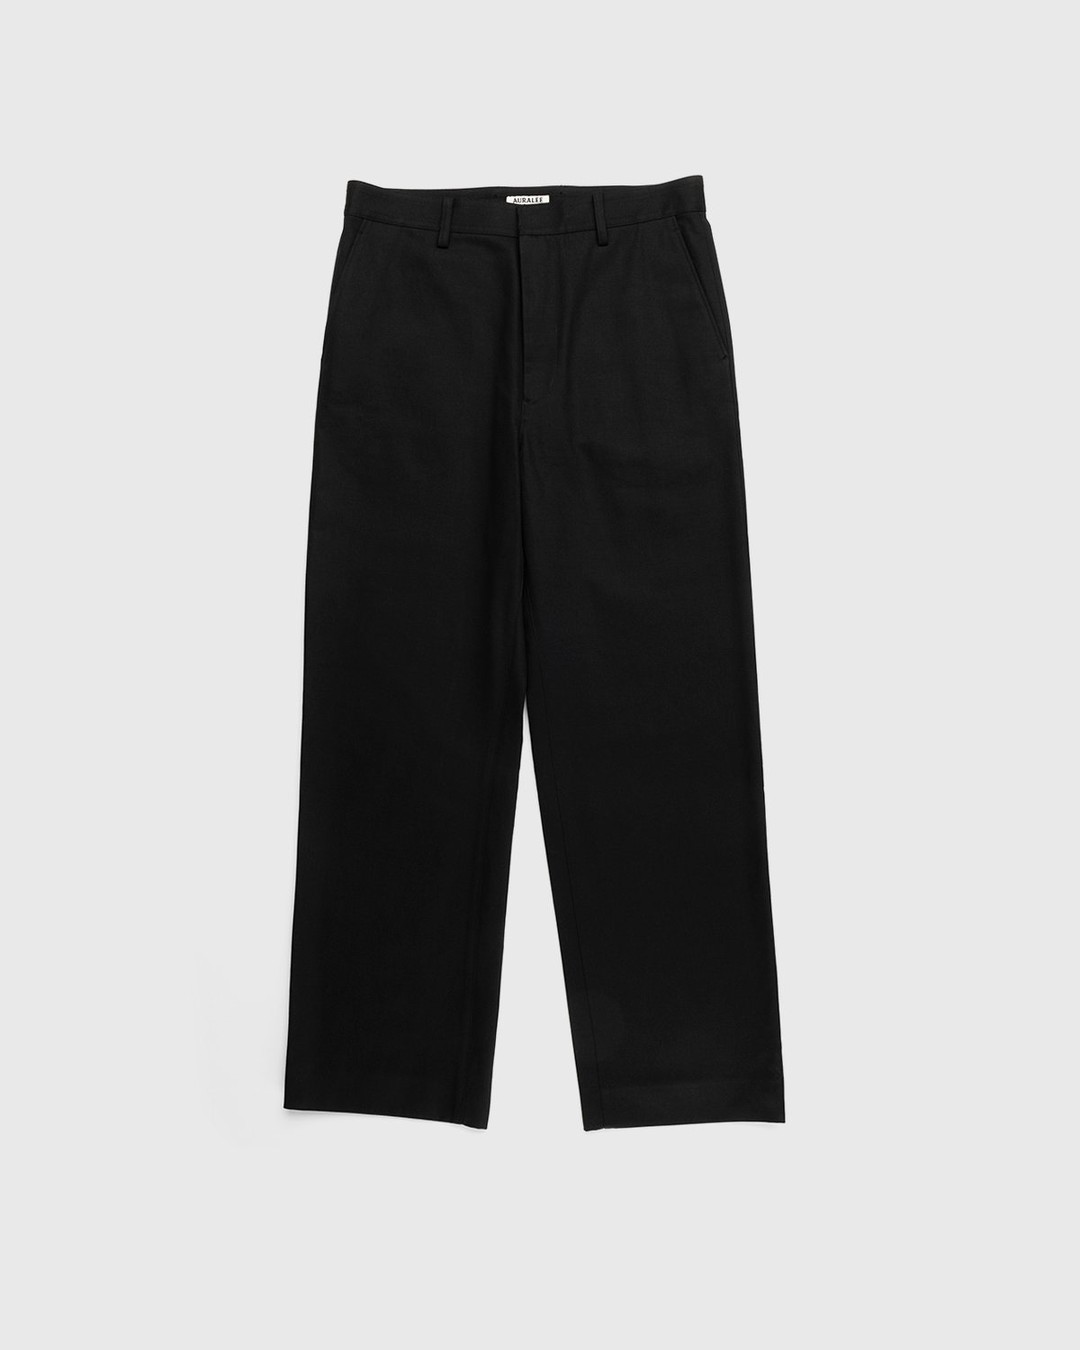 Auralee – Cotton Woven Pants Black - Trousers - Black - Image 1